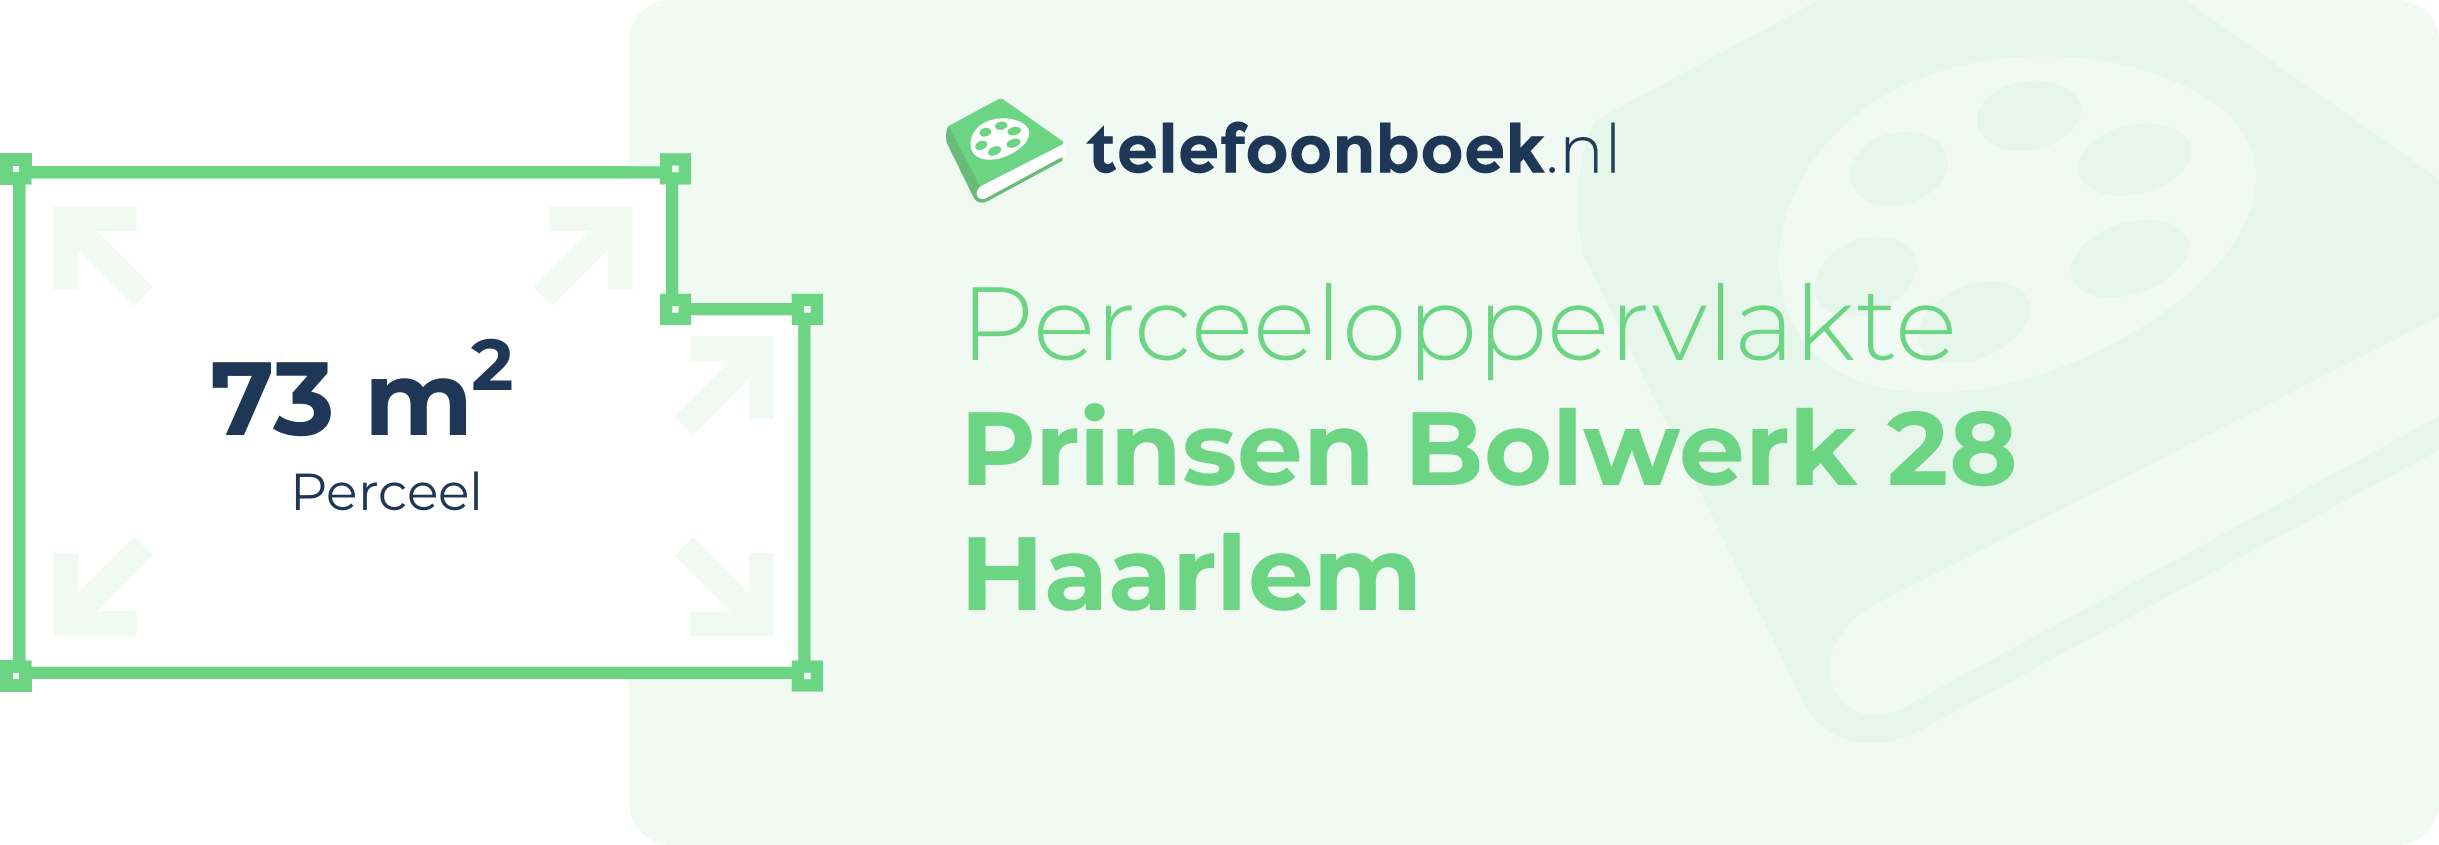 Perceeloppervlakte Prinsen Bolwerk 28 Haarlem